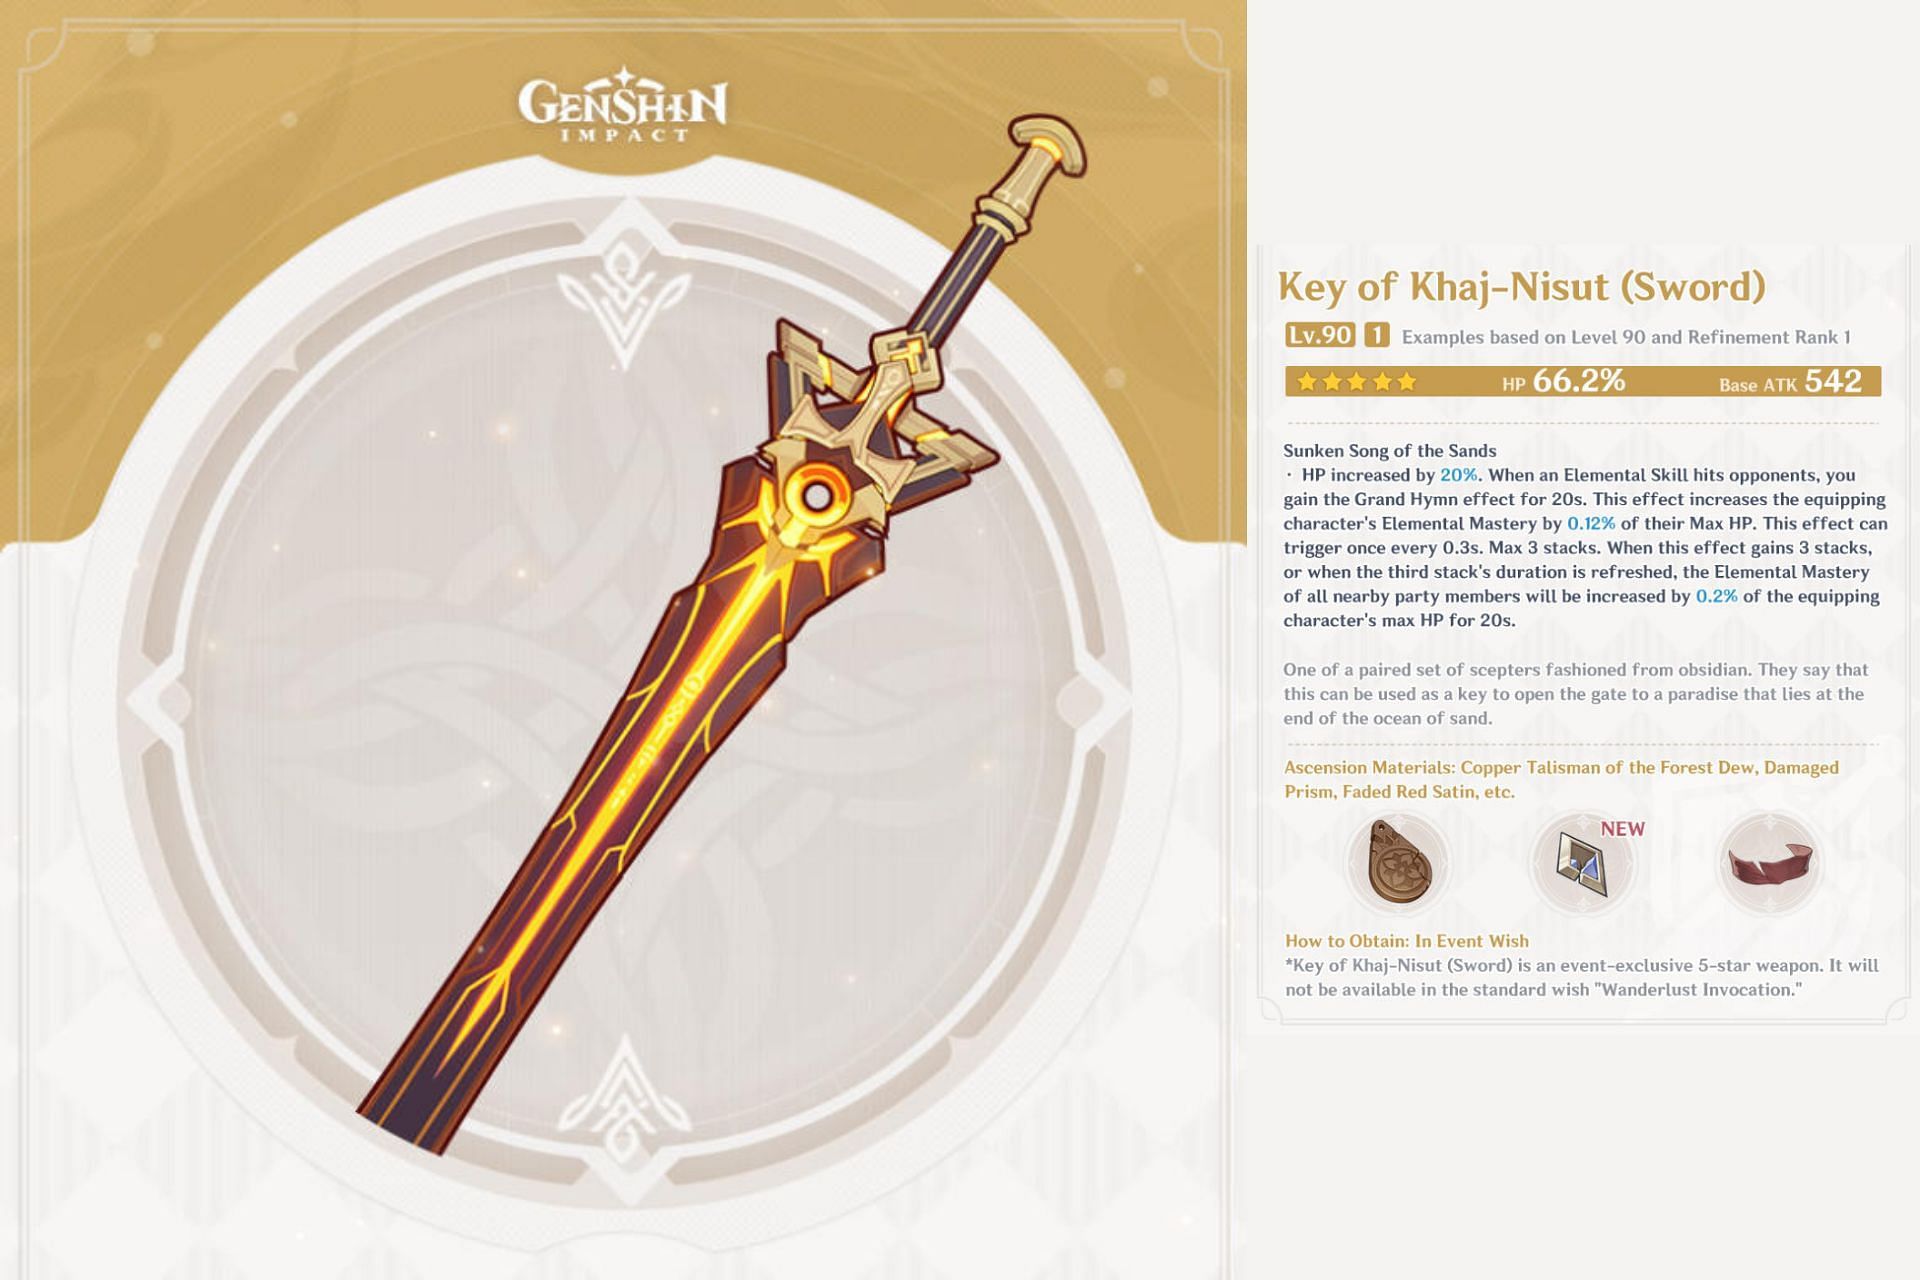 Key of Khaj-Nisut description (Image via HoYoverse)